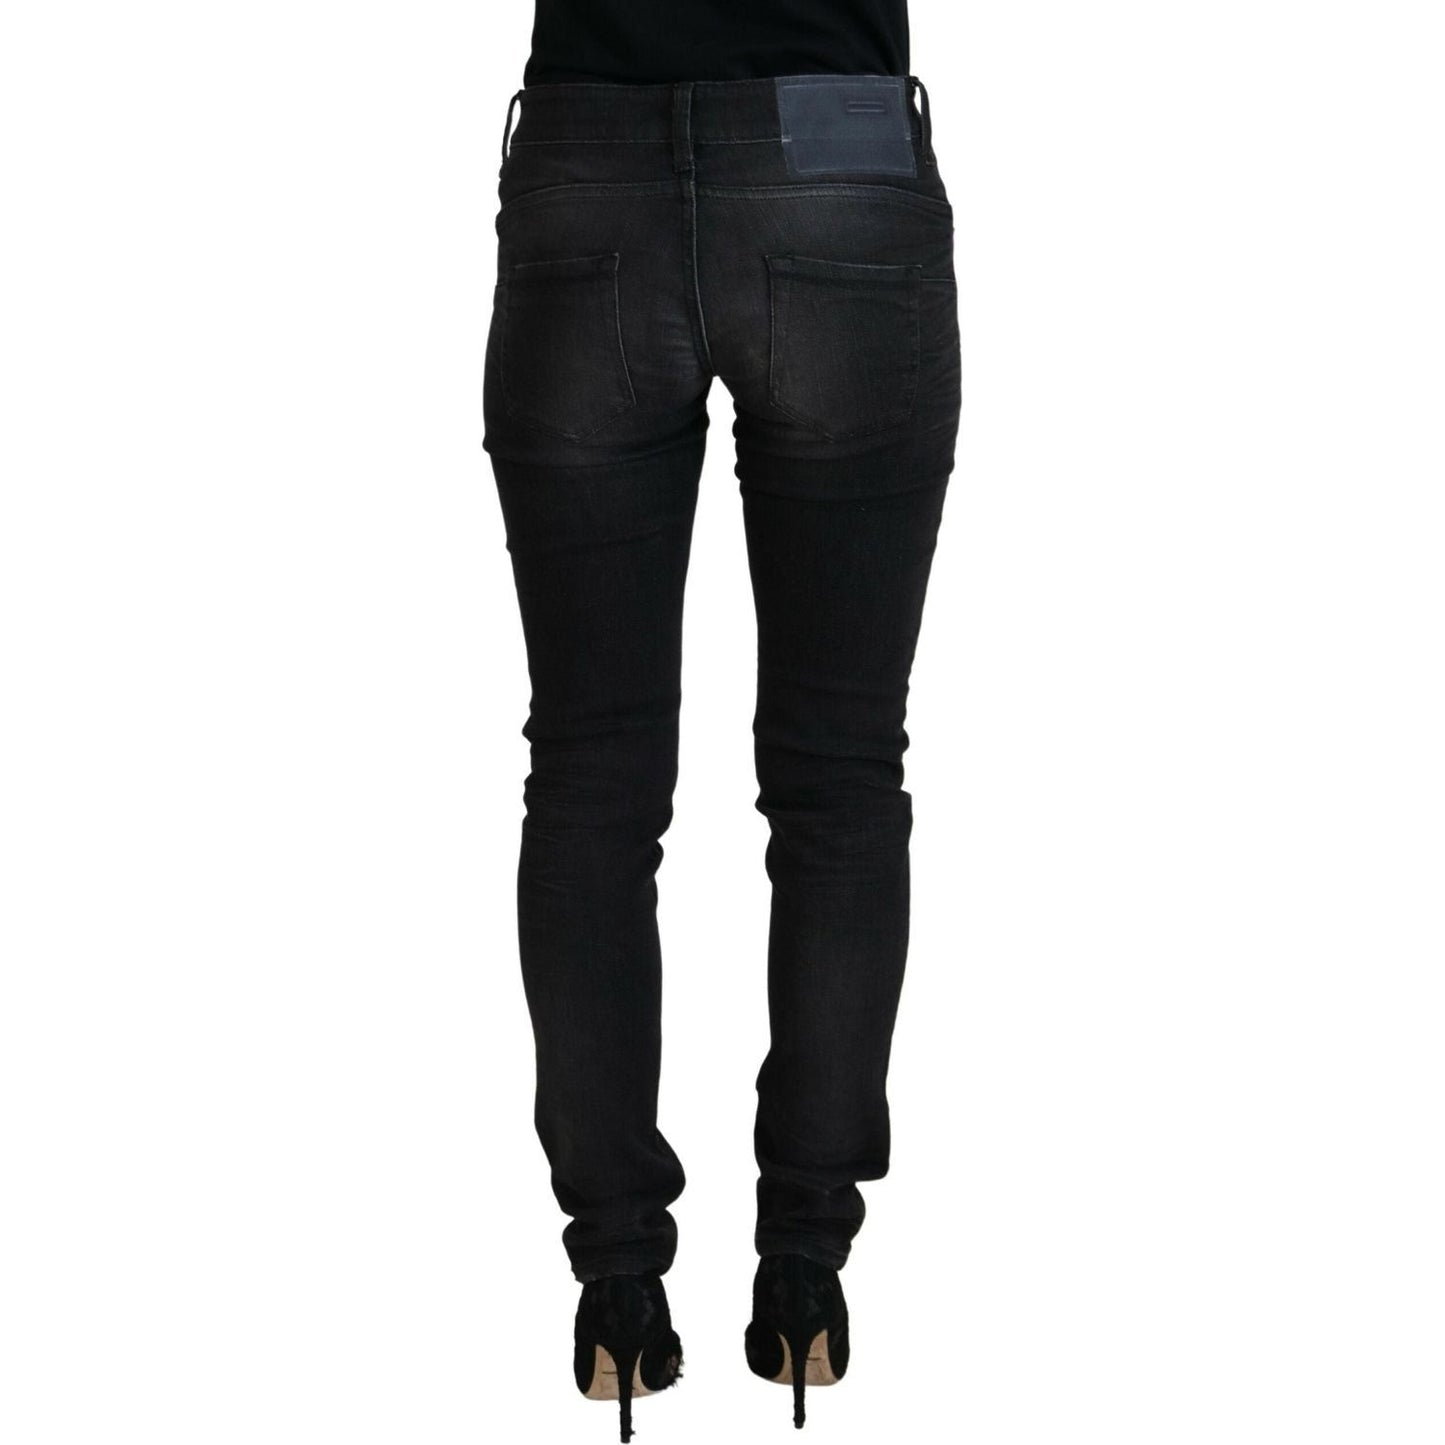 Acht Chic Black Low Waist Straight Leg Jeans black-cotton-low-waist-slim-fit-women-casual-denim-jeans